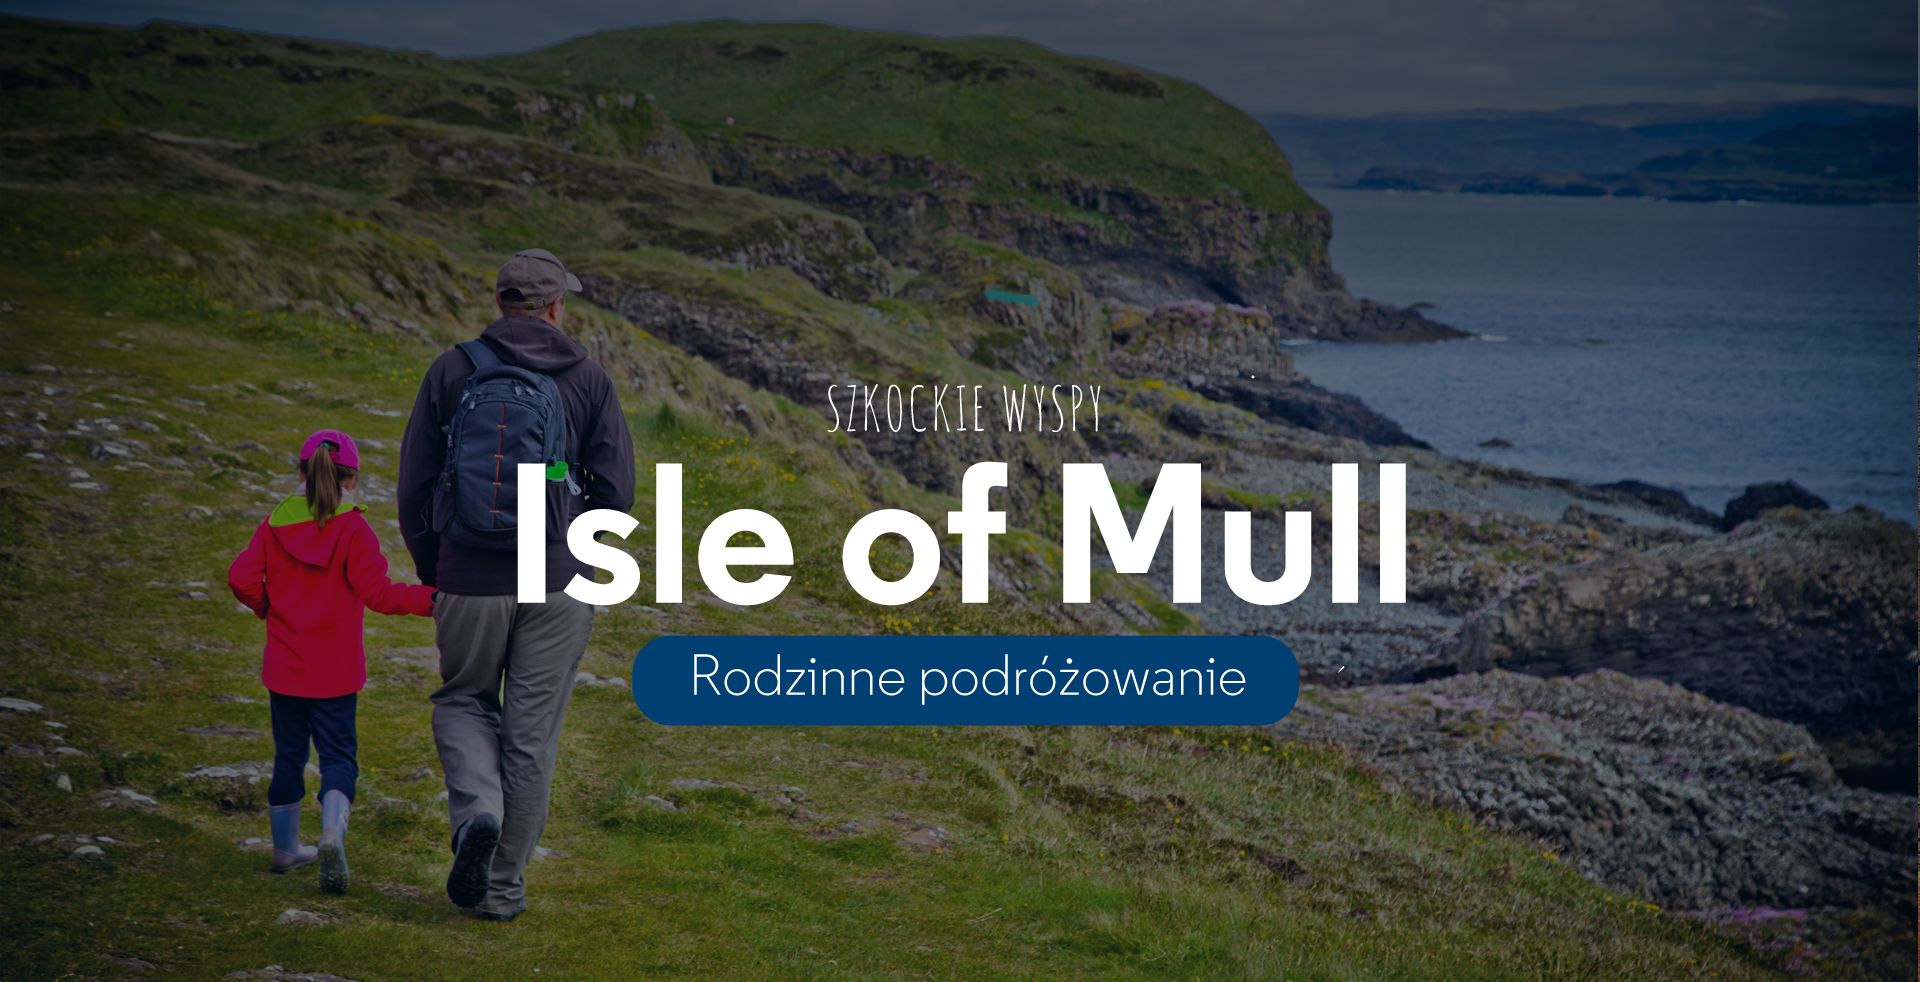 Szkockie wyspy Isle of Mull